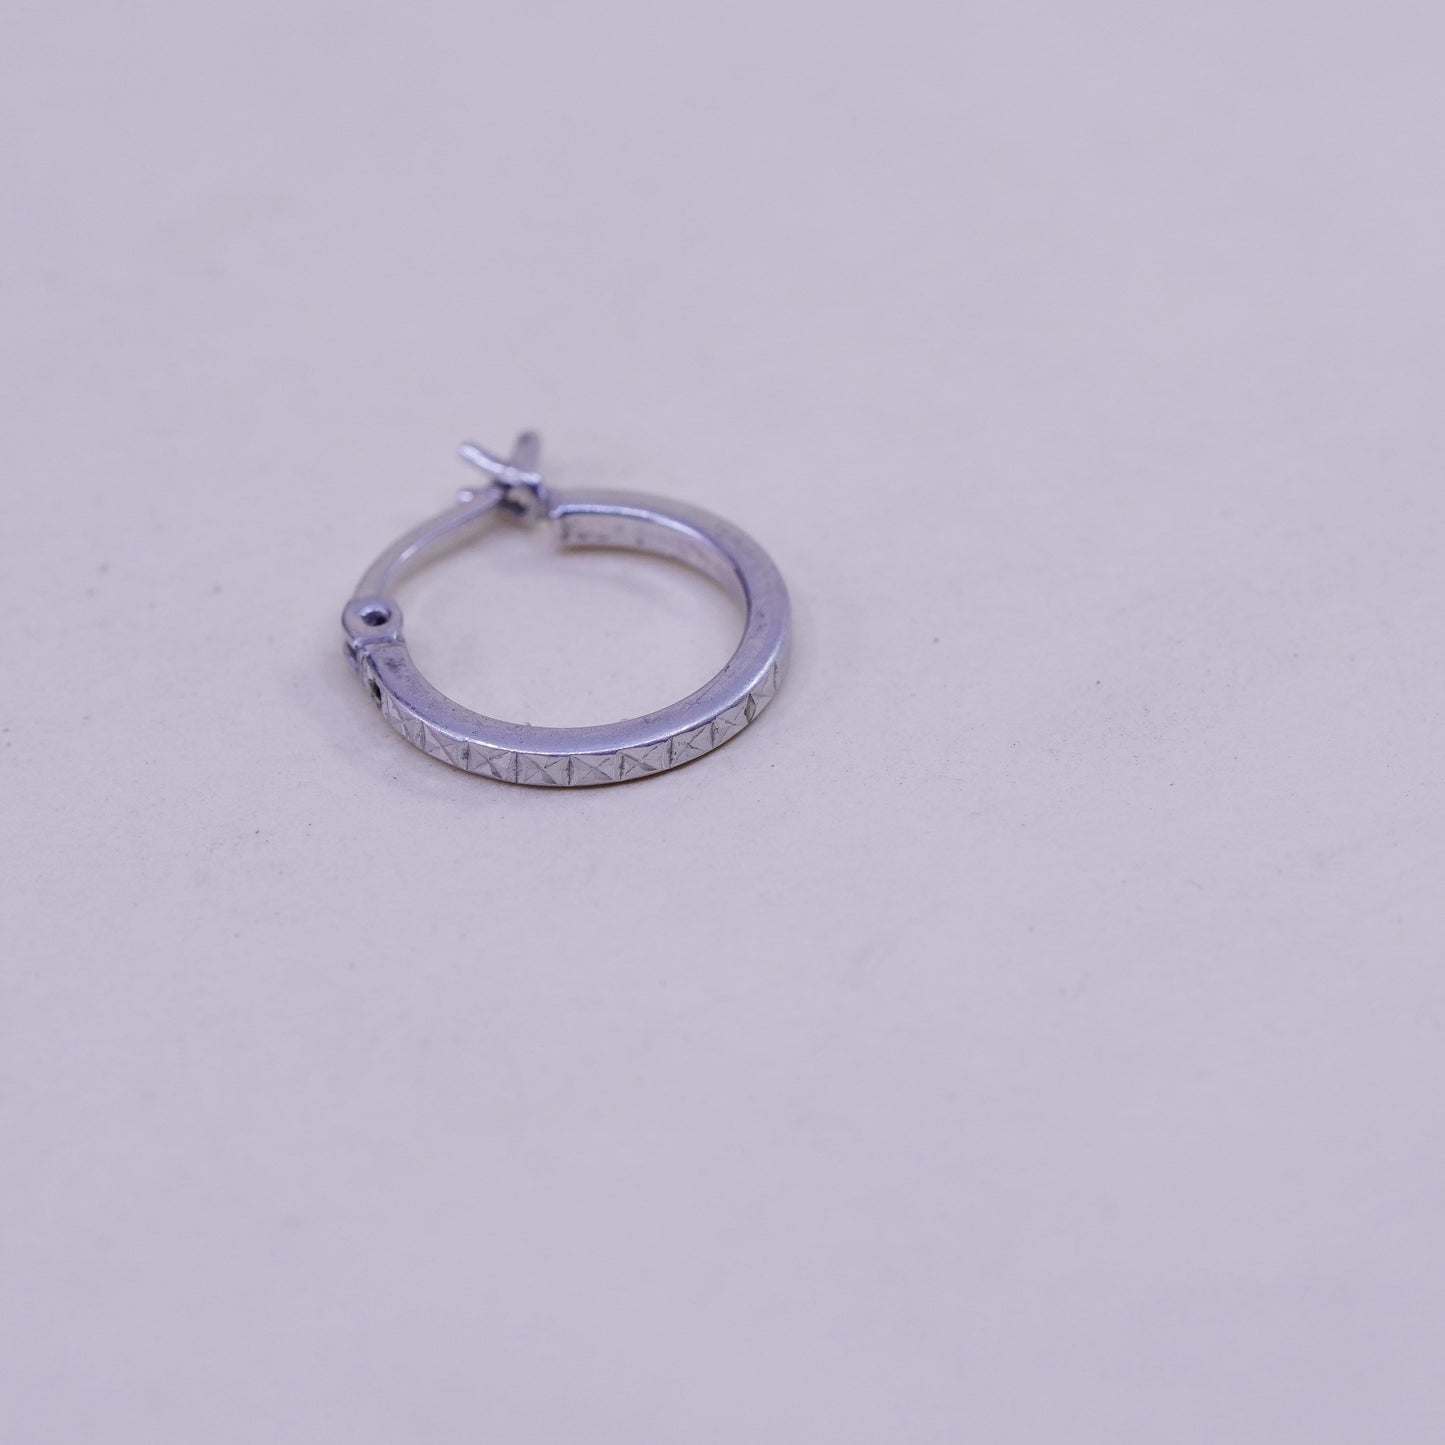 0.5”, Vintage sterling silver loop earrings, textured fine 925 silver hoops